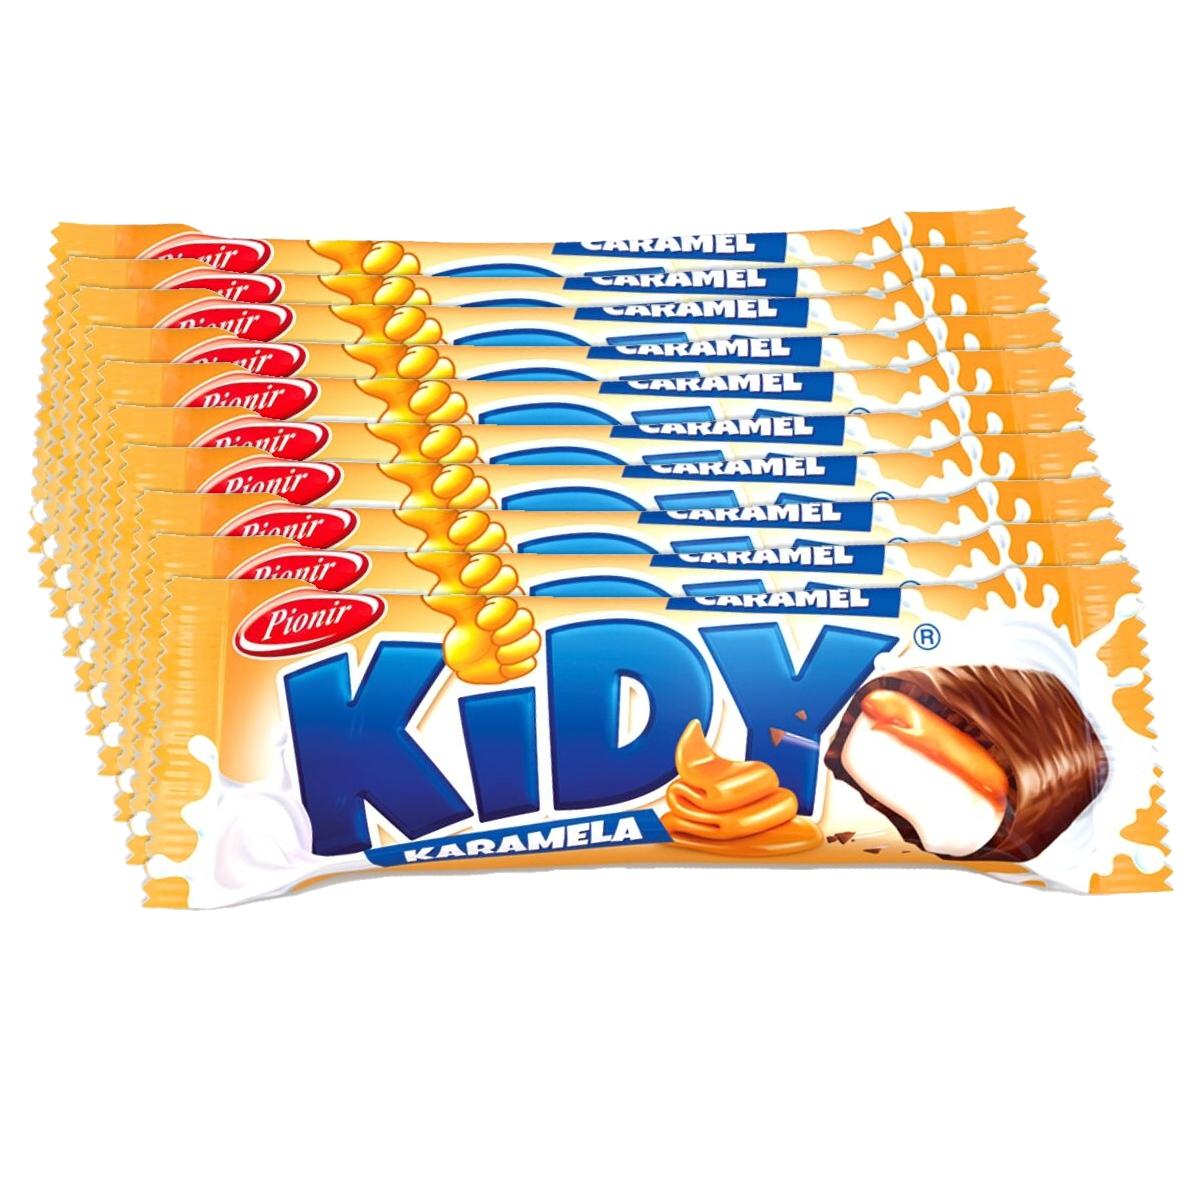 Pionir Kidy Čokoladica sa karamelom, 30g, 10 komada